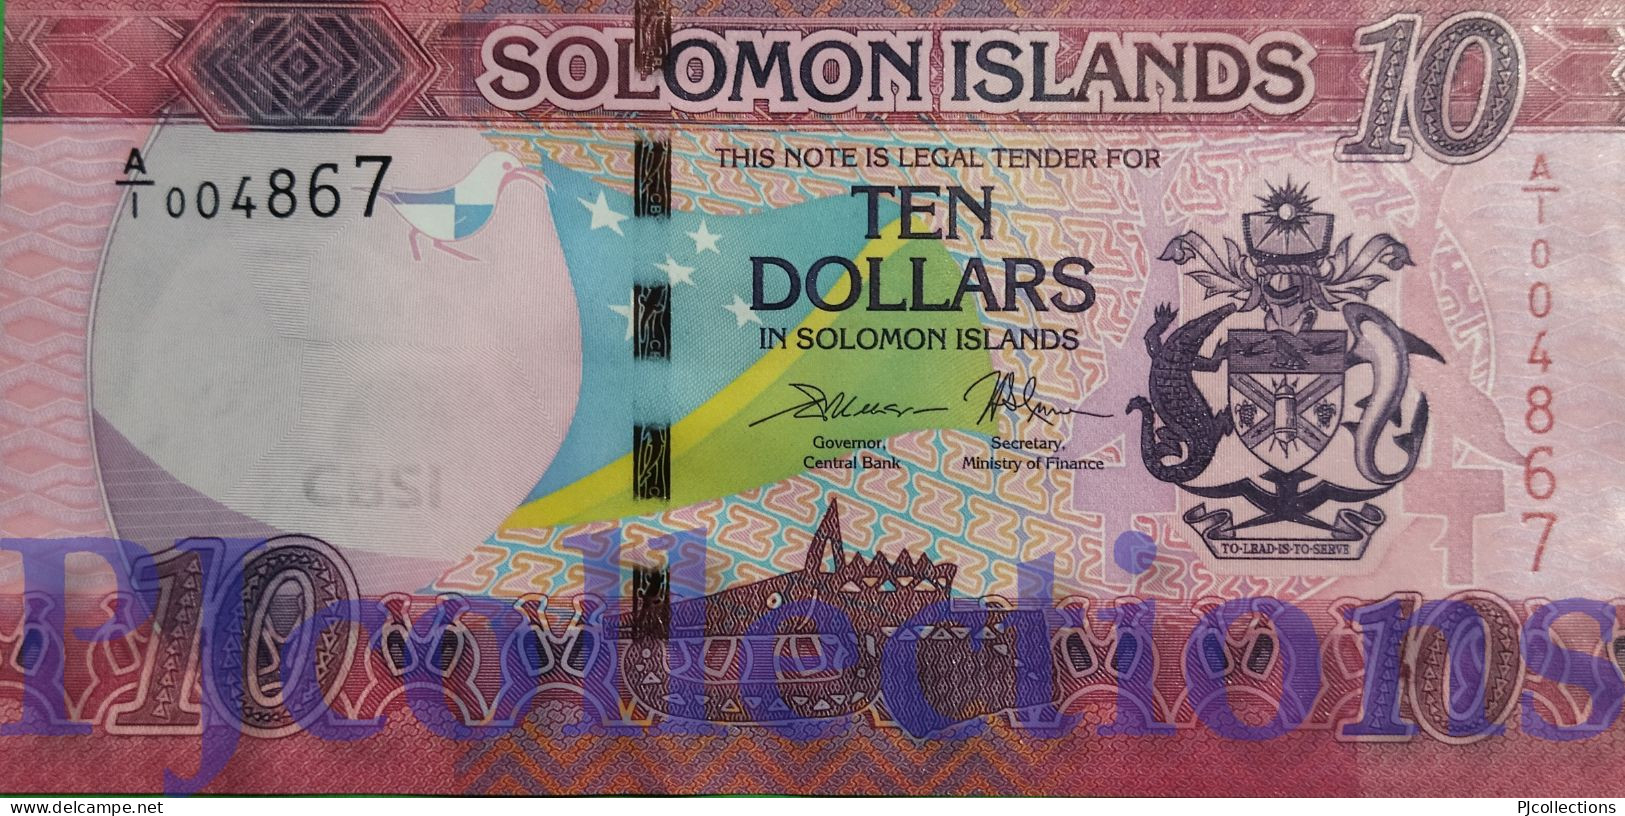 SOLOMON ISLANDS 10 DOLLARS 2017 PICK 33 UNC LOW SERIAL NUMBER "A/1 0048**" - Solomonen